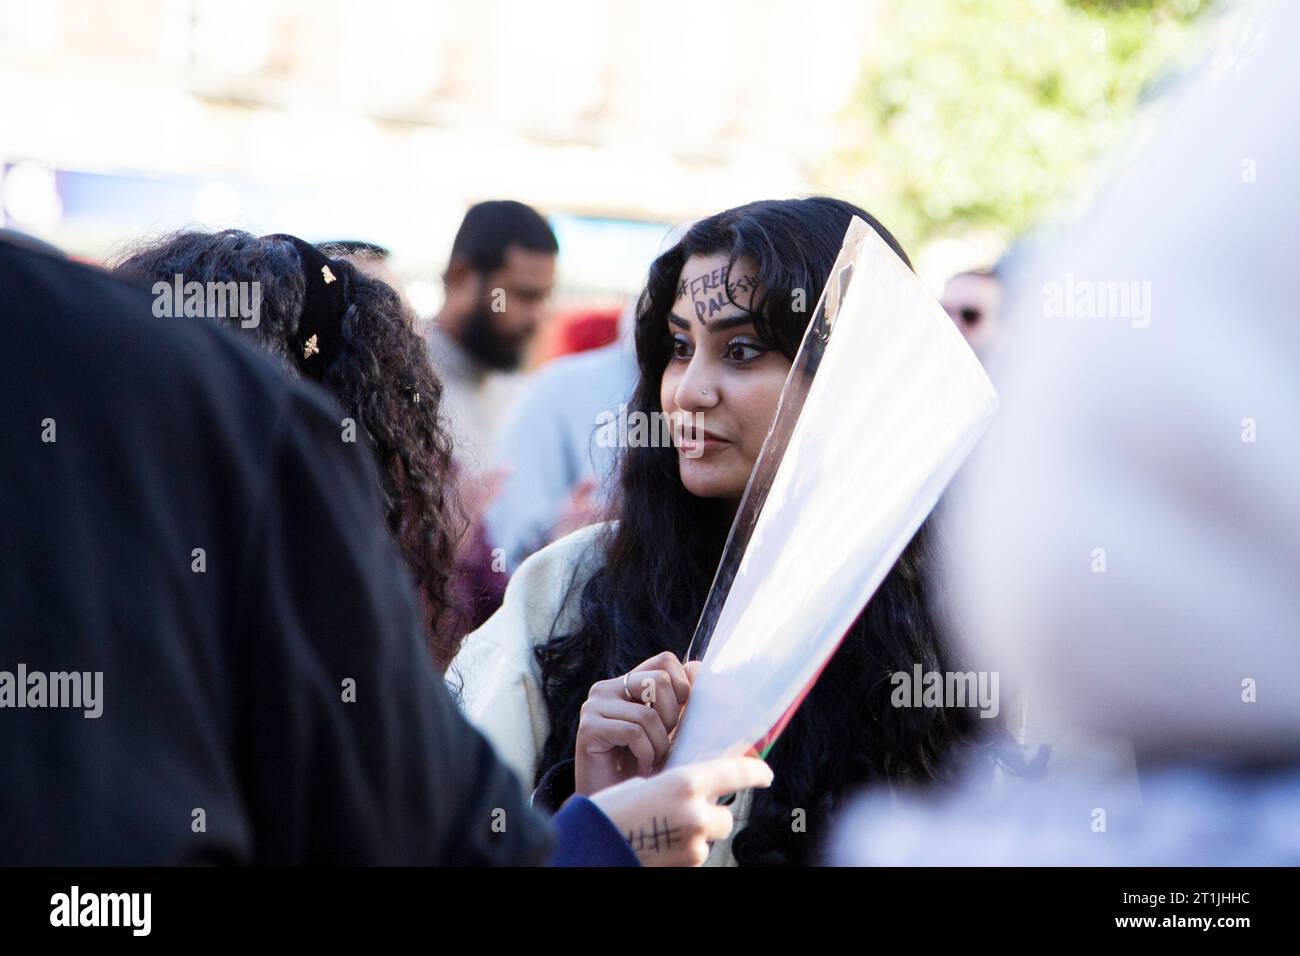 Freier palästinensischer Protest im Stadtzentrum von Exeter - junge palästinensisch aussehende Dame mit schwarzem Hash-Tag '#FREEPALESTINE' auf der Stirn des Gesichts Stockfoto